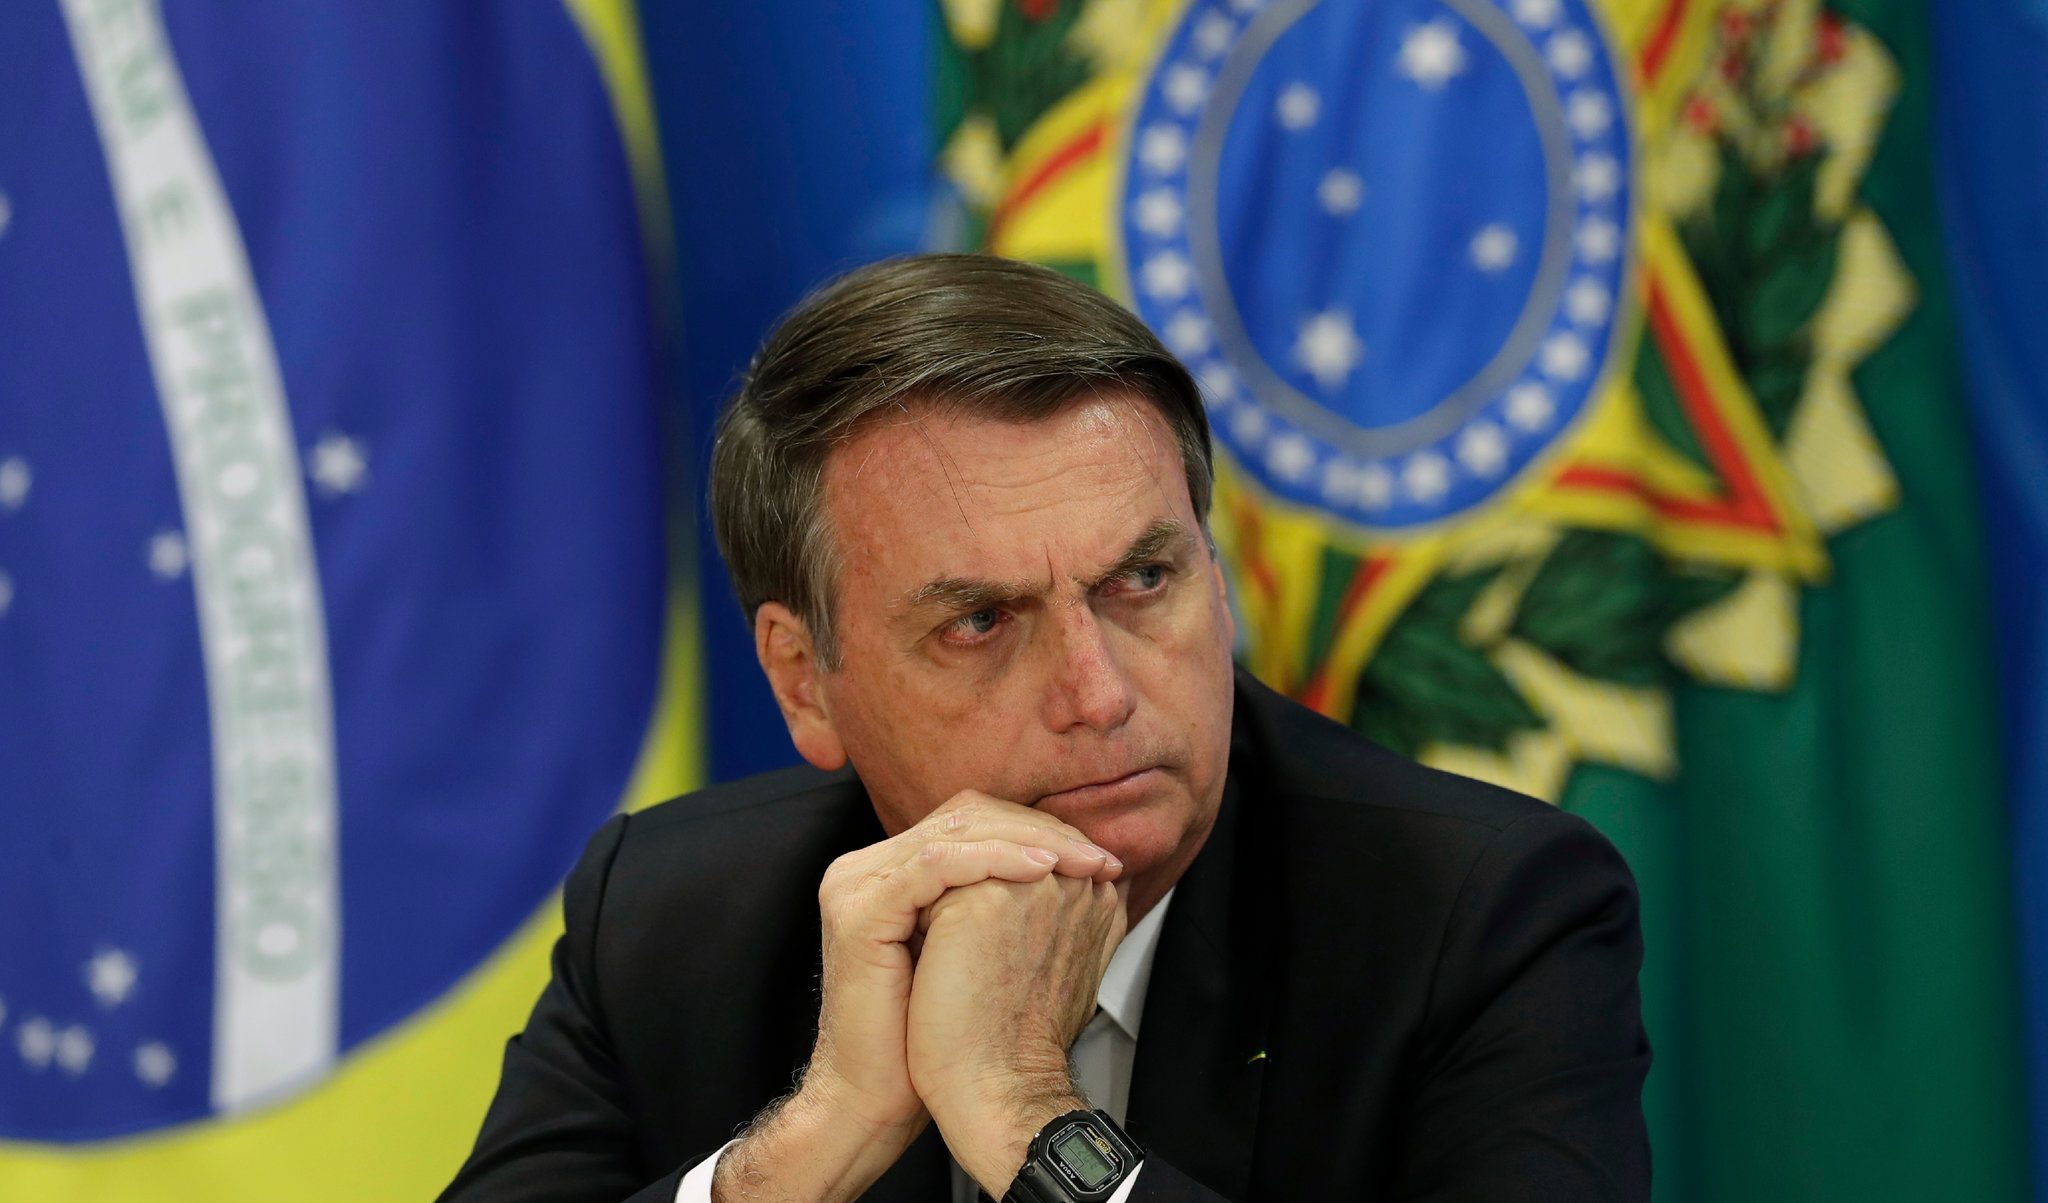 Brasile, il giudice della Corte Suprema: "Bolsonaro ha incitato alla violenza contro le istituzioni"